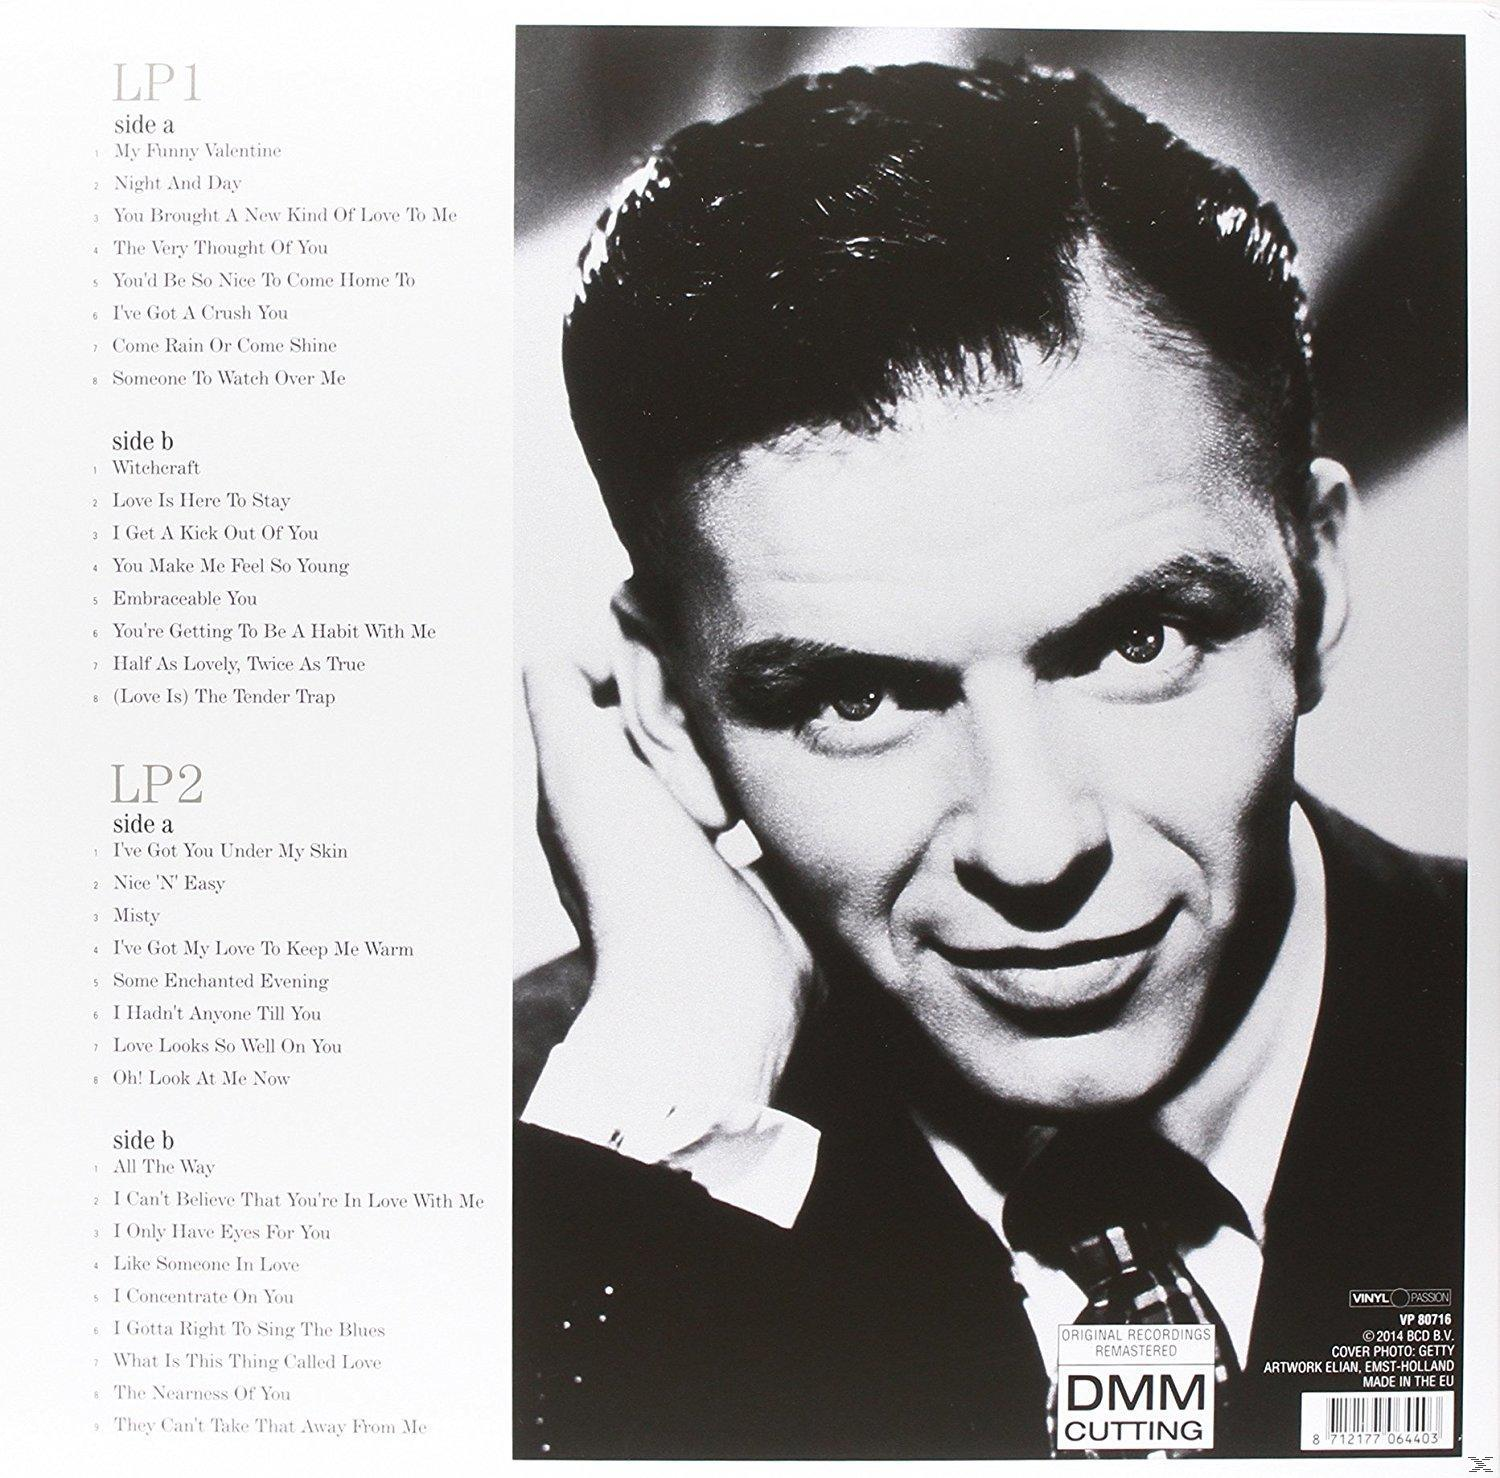 Frank In - Sinatra (Vinyl) - Sinatra Love